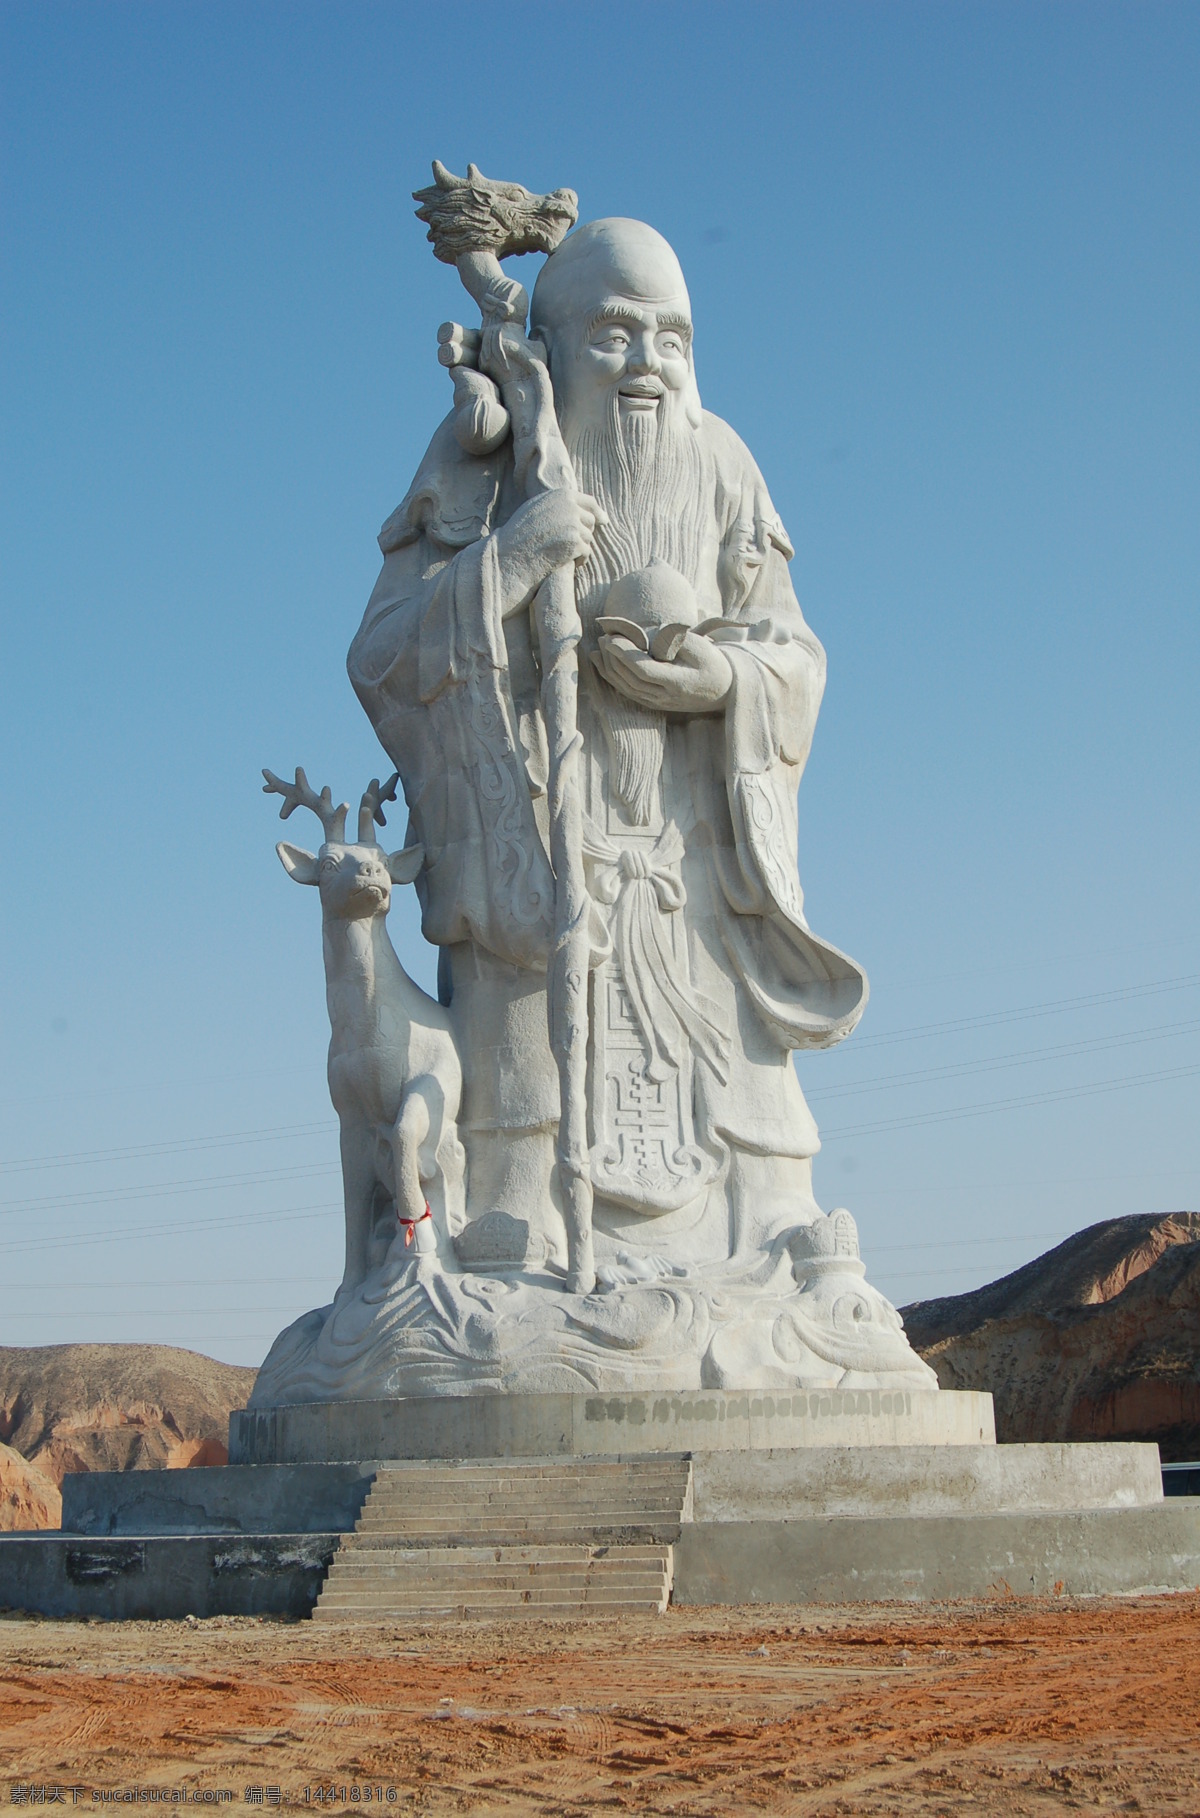 寿星雕像 寿星 雕像 寿星雕塑 老寿星 寿星图 福禄寿 雕塑 建筑园林